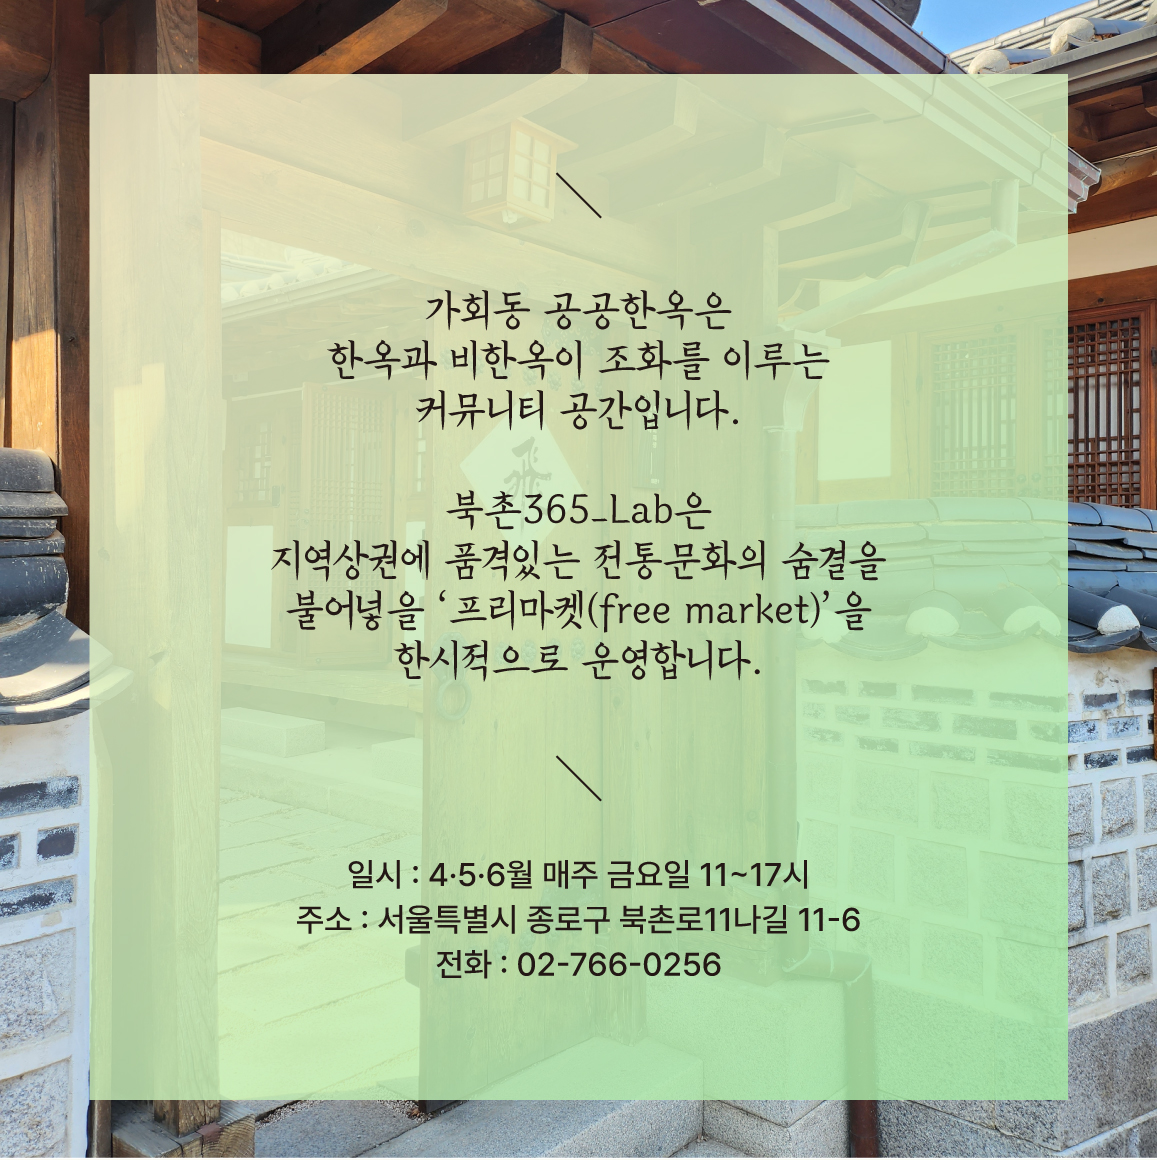 [북촌365_Lab] 'free한 한옥' 5월 프리마켓 운영안내